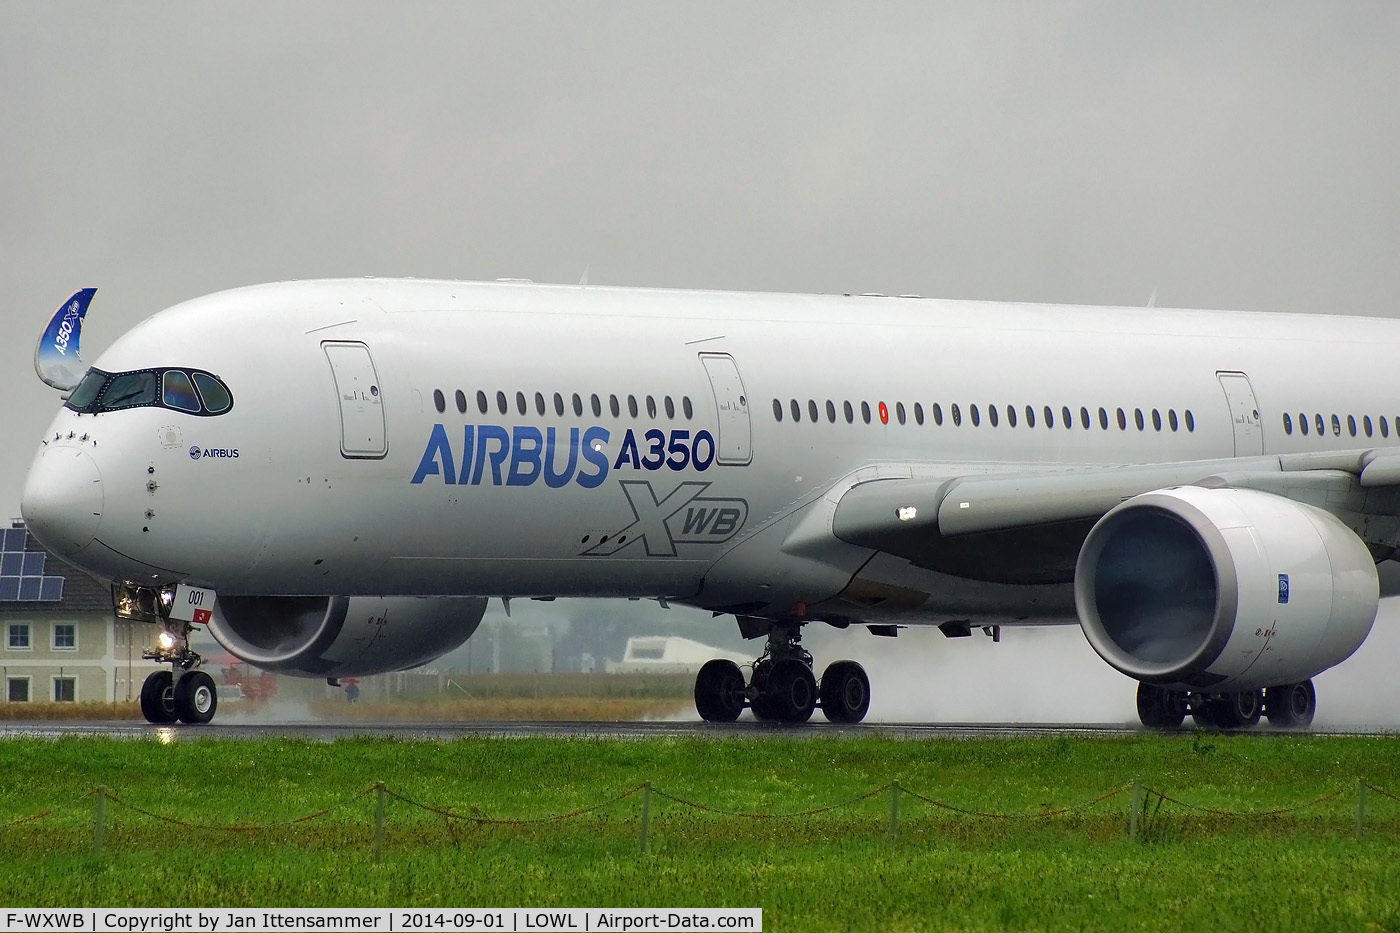 F-WXWB, 2013 Airbus A350-941 C/N 001, f-wxwb